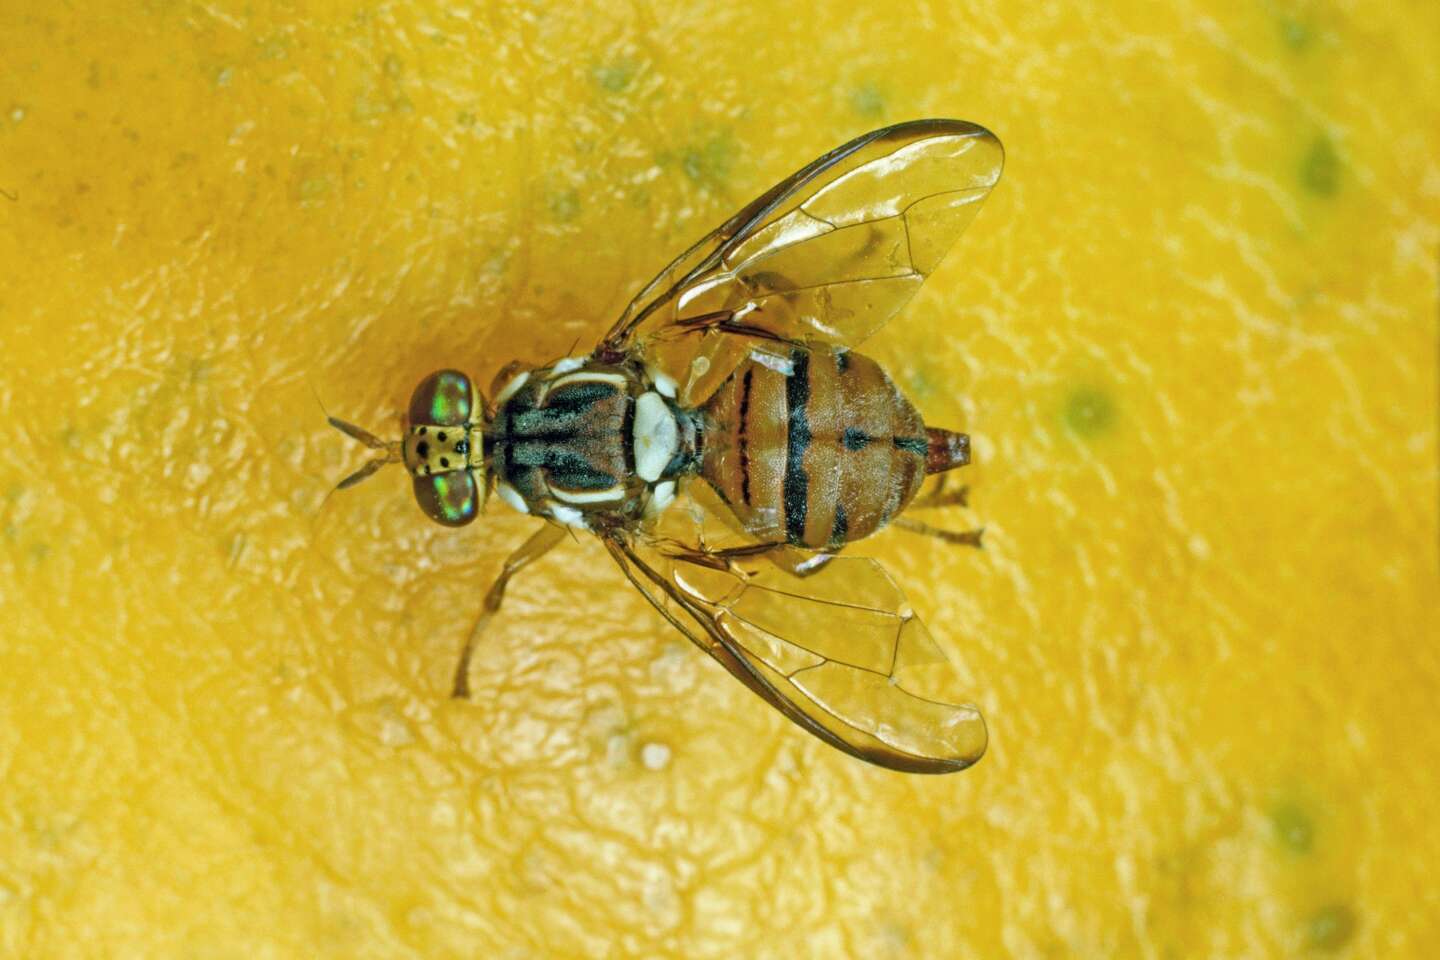 L’agence sanitaire Anses recommande de renforcer la surveillance contre la mouche orientale des fruits